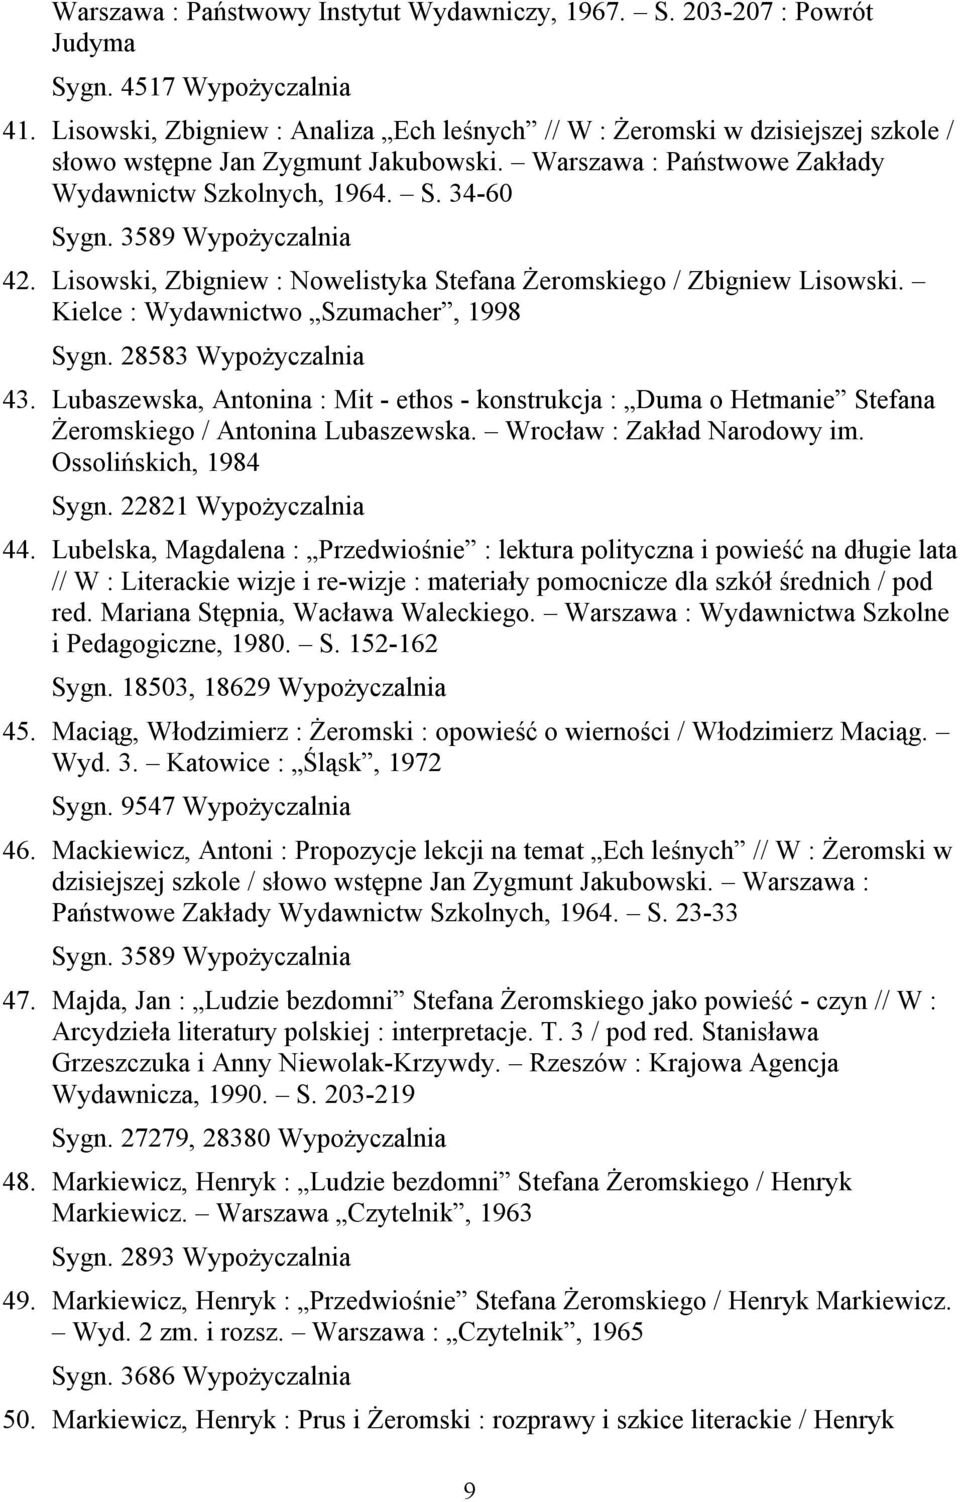 Lisowski, Zbigniew : Nowelistyka Stefana Żeromskiego / Zbigniew Lisowski. Kielce : Wydawnictwo Szumacher, 1998 Sygn. 28583 Wypożyczalnia 43.